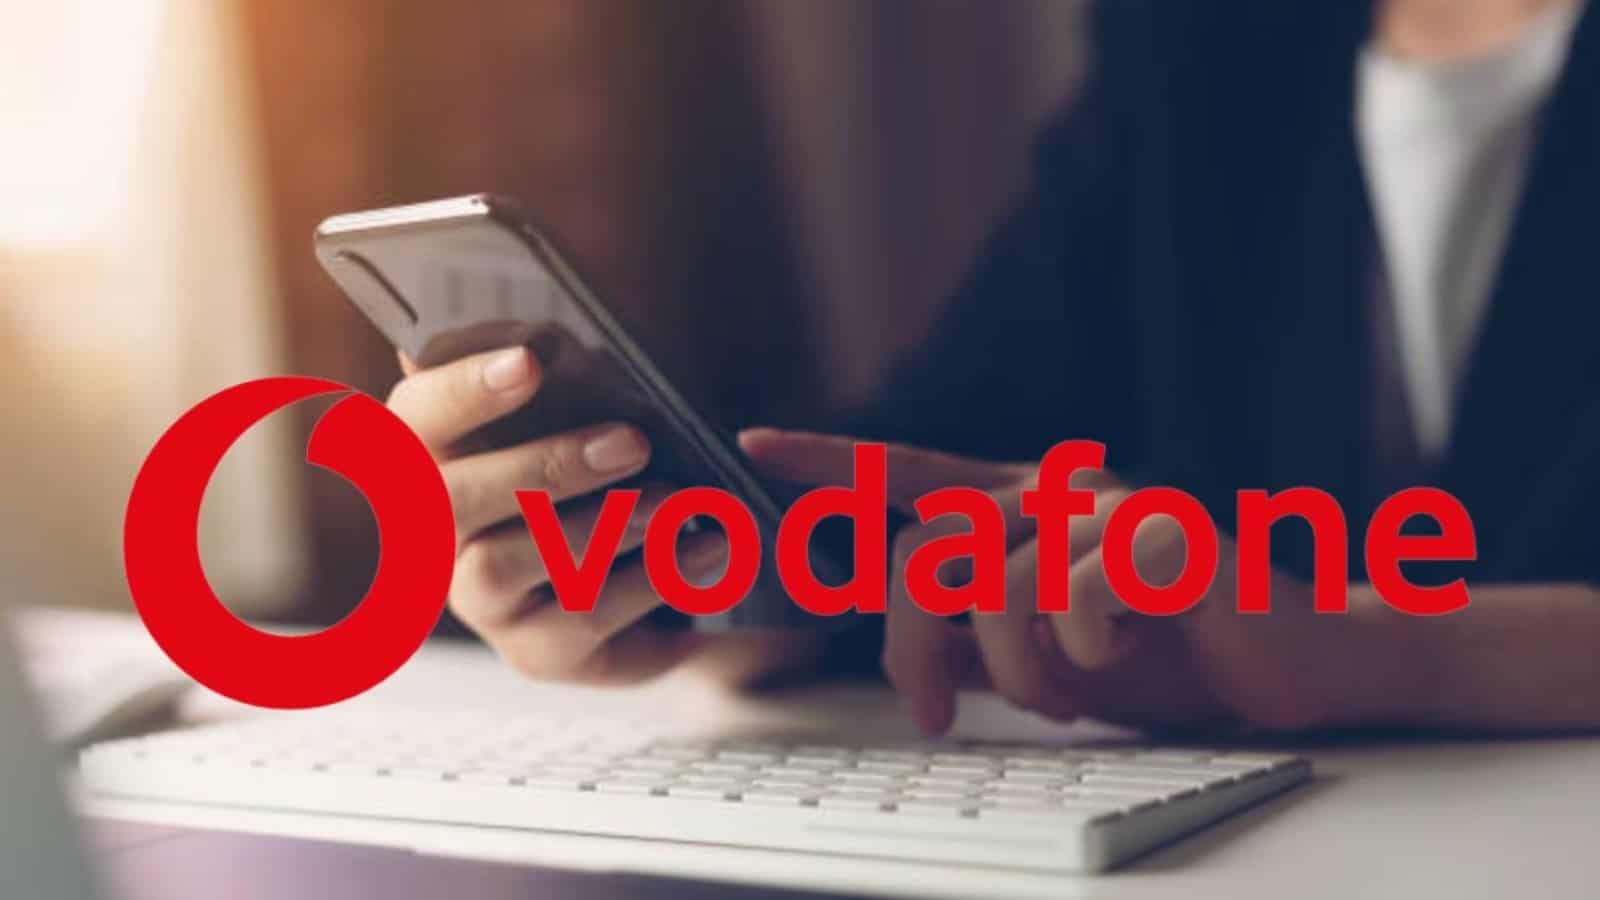 Vodafone parte ad APRILE con le SILVER da 7 EURO al mese